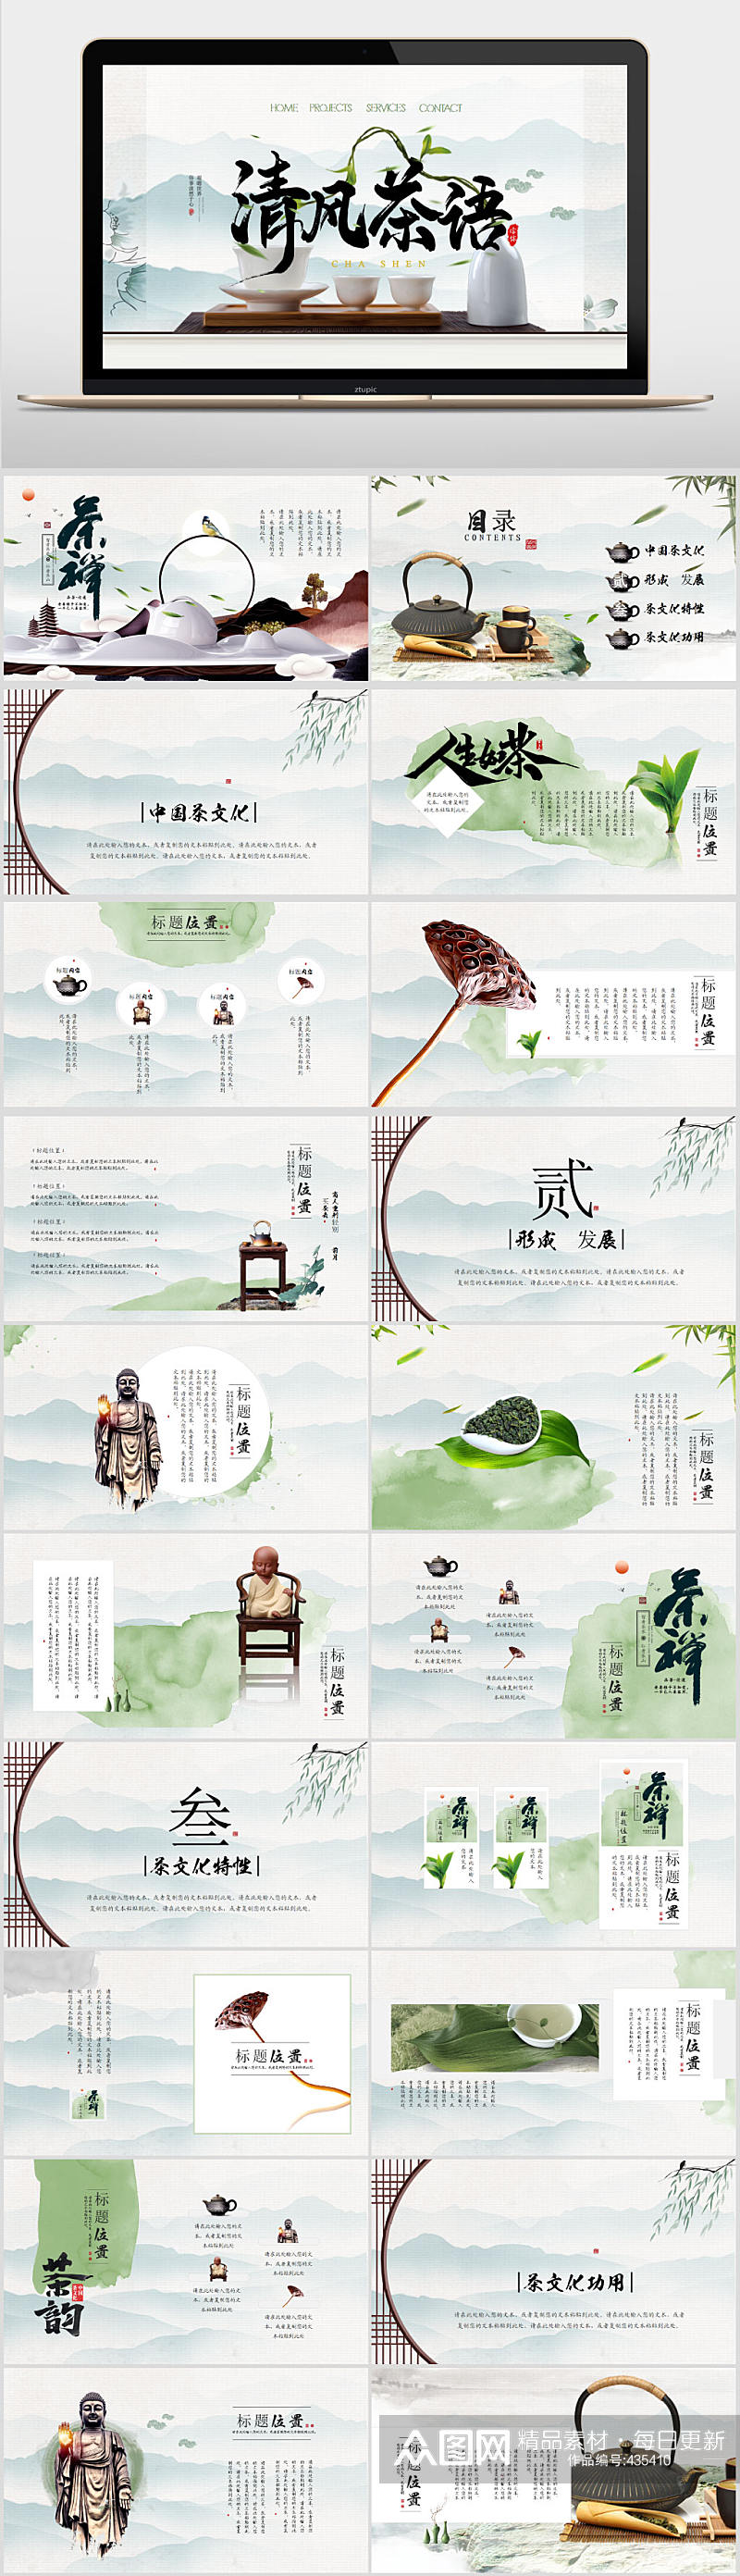 中国风茶禅茶文化PPT素材